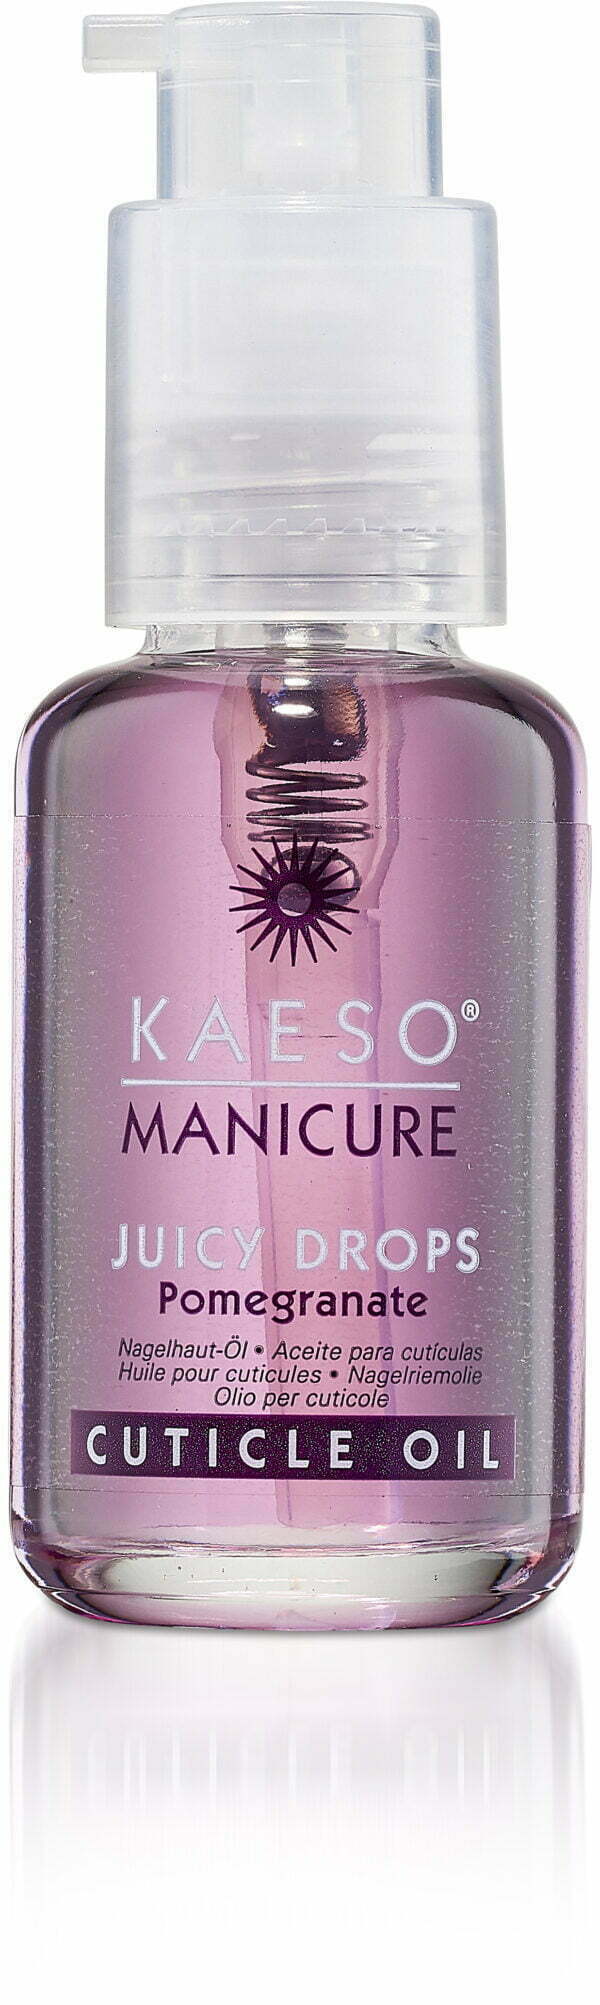 Kaeso Juicy Drops Cuticle Oil - 50ml